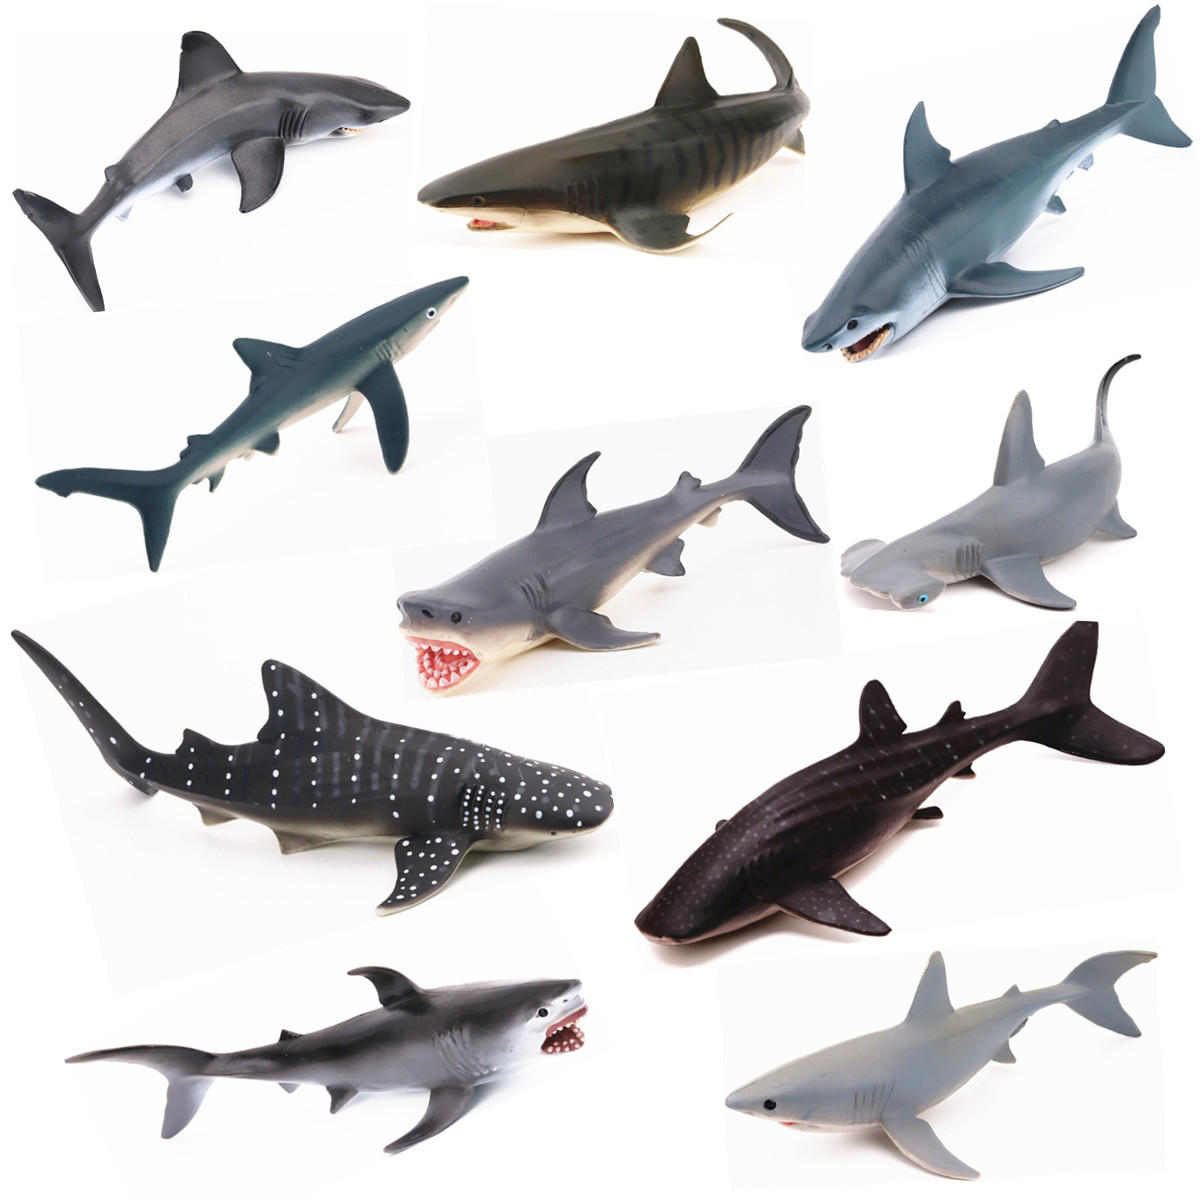 واقعية المحيط الحيوان نموذج البحرية الحيوان سلسلة الحوت القرش الصلبة علوم التعليم لغز اللعب